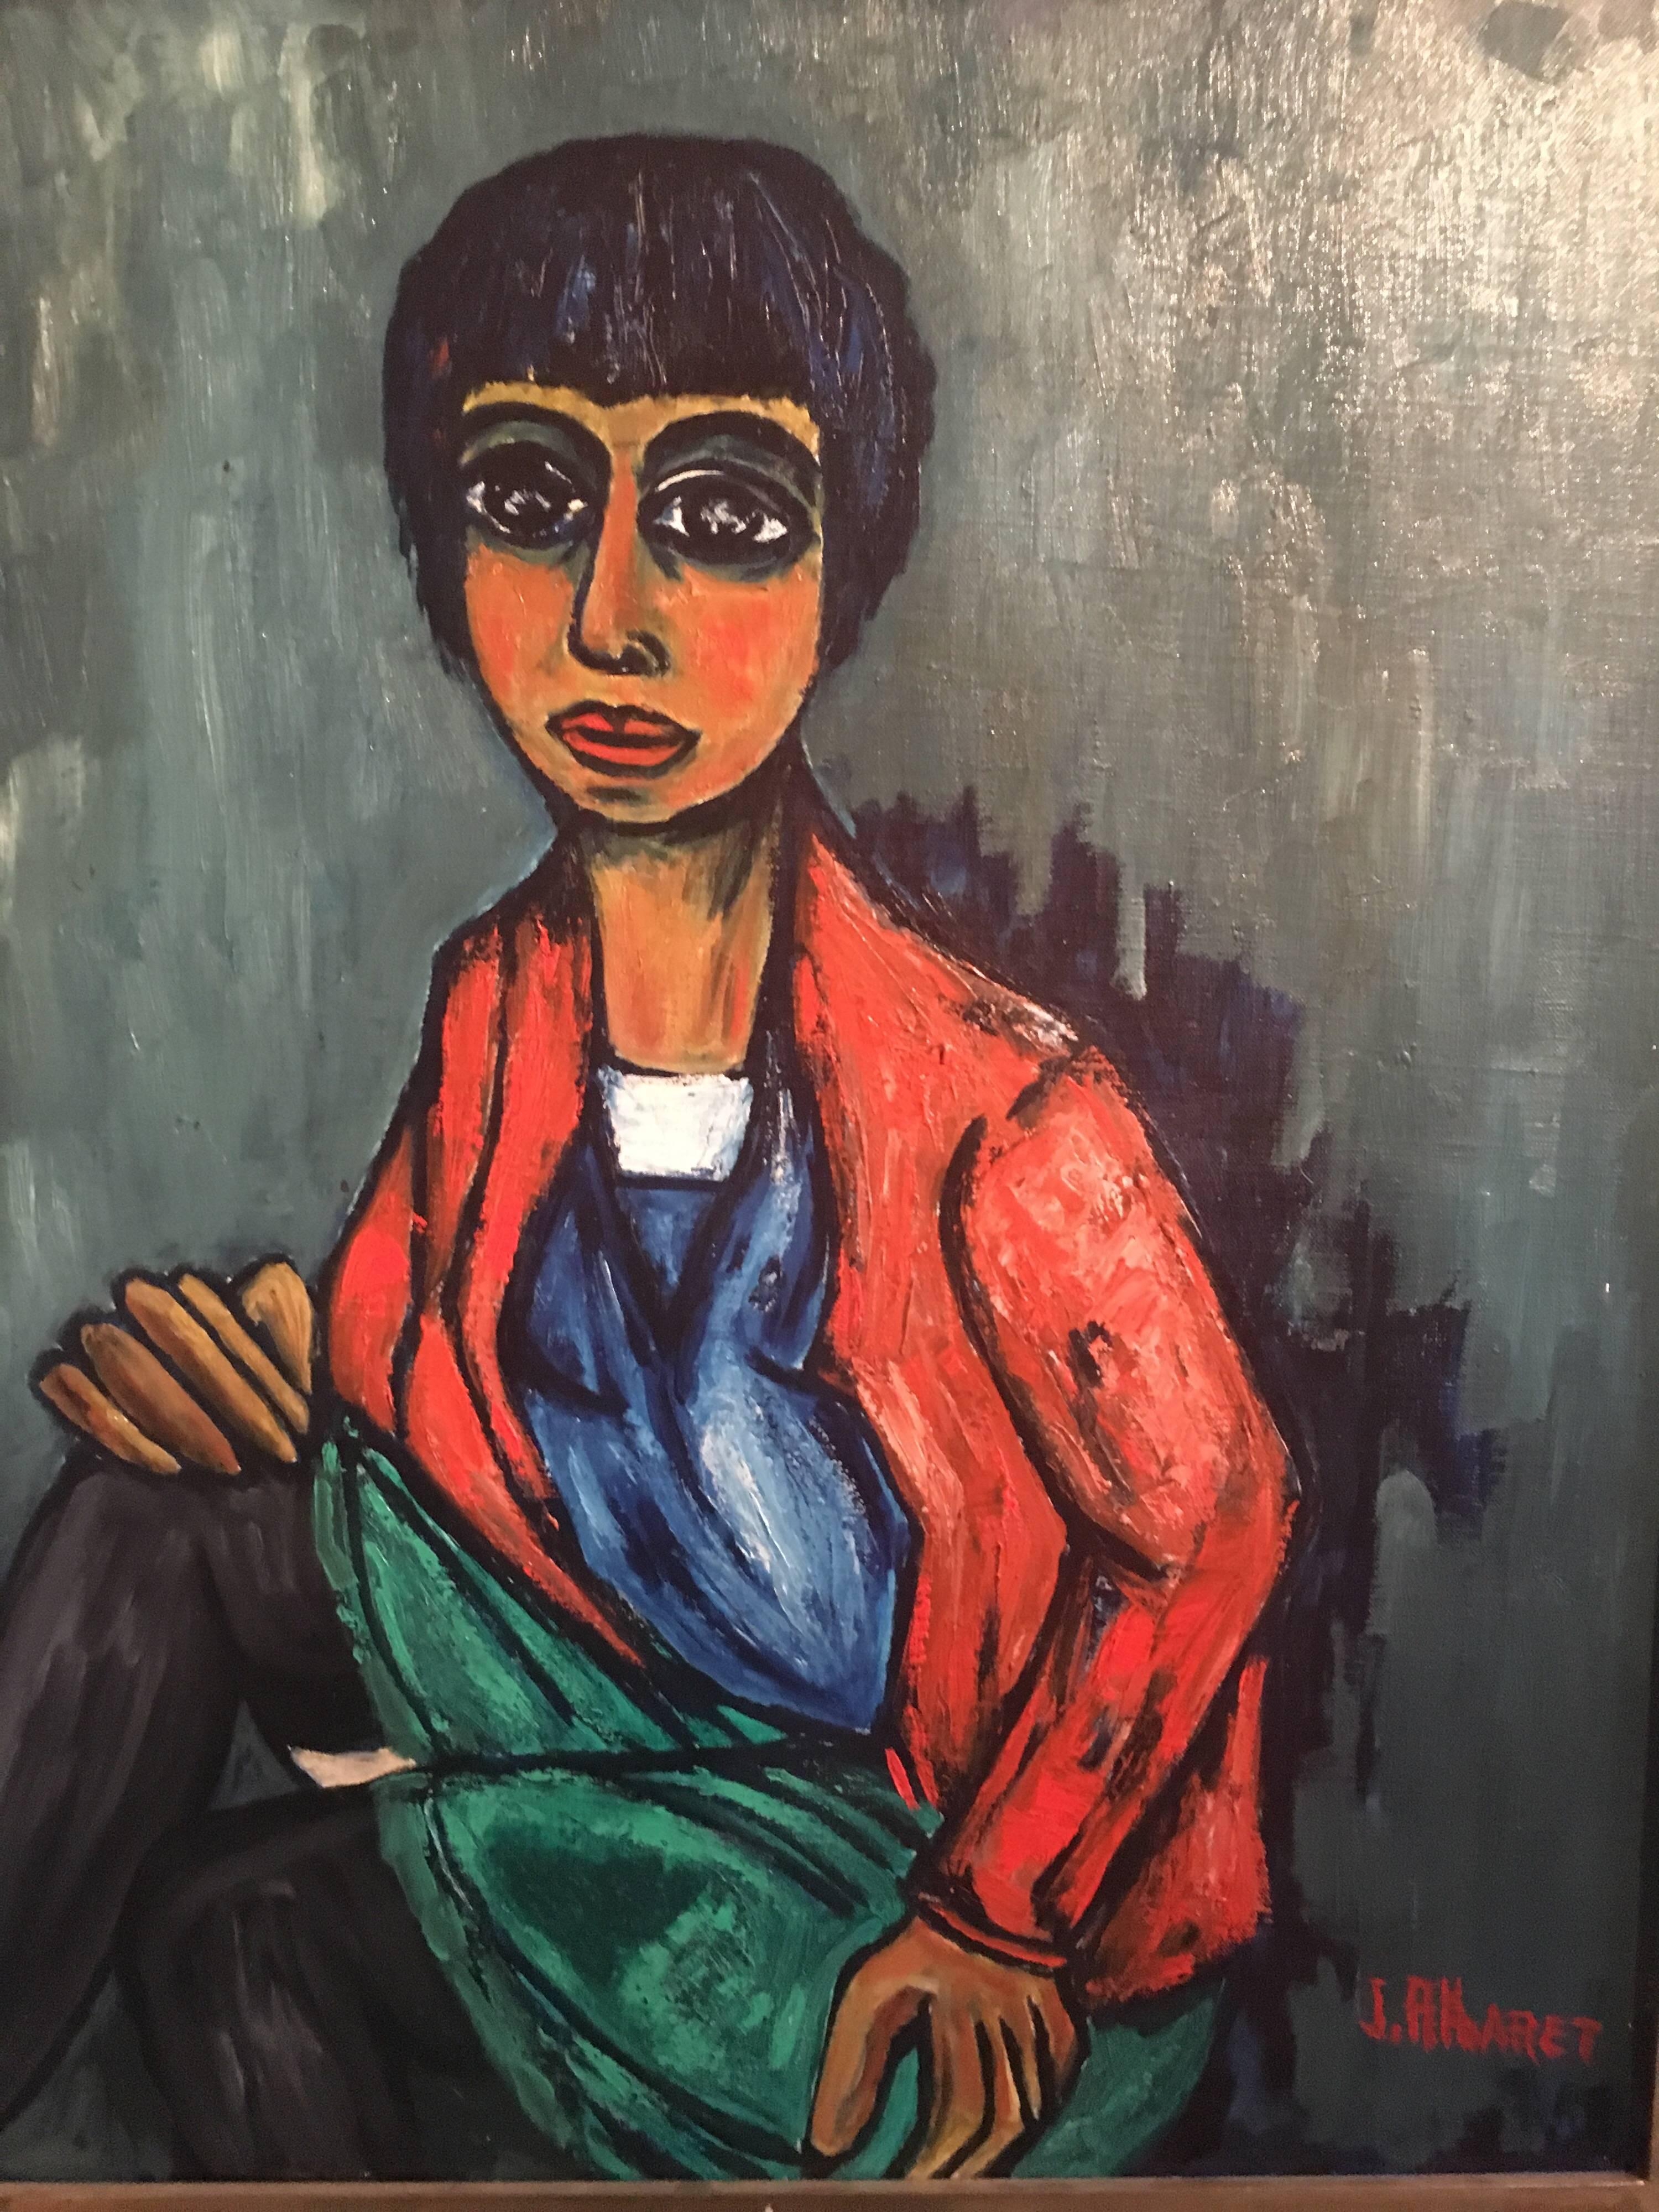 Portrait d'une femme élégante
École française, Milieu du 20e siècle
Peinture à l'huile sur toile, encadrée
Signé par l'artiste dans le coin inférieur droit
Taille du cadre : 26.5 x 22 pouces

Peinture expressionniste française stylisée d'une dame